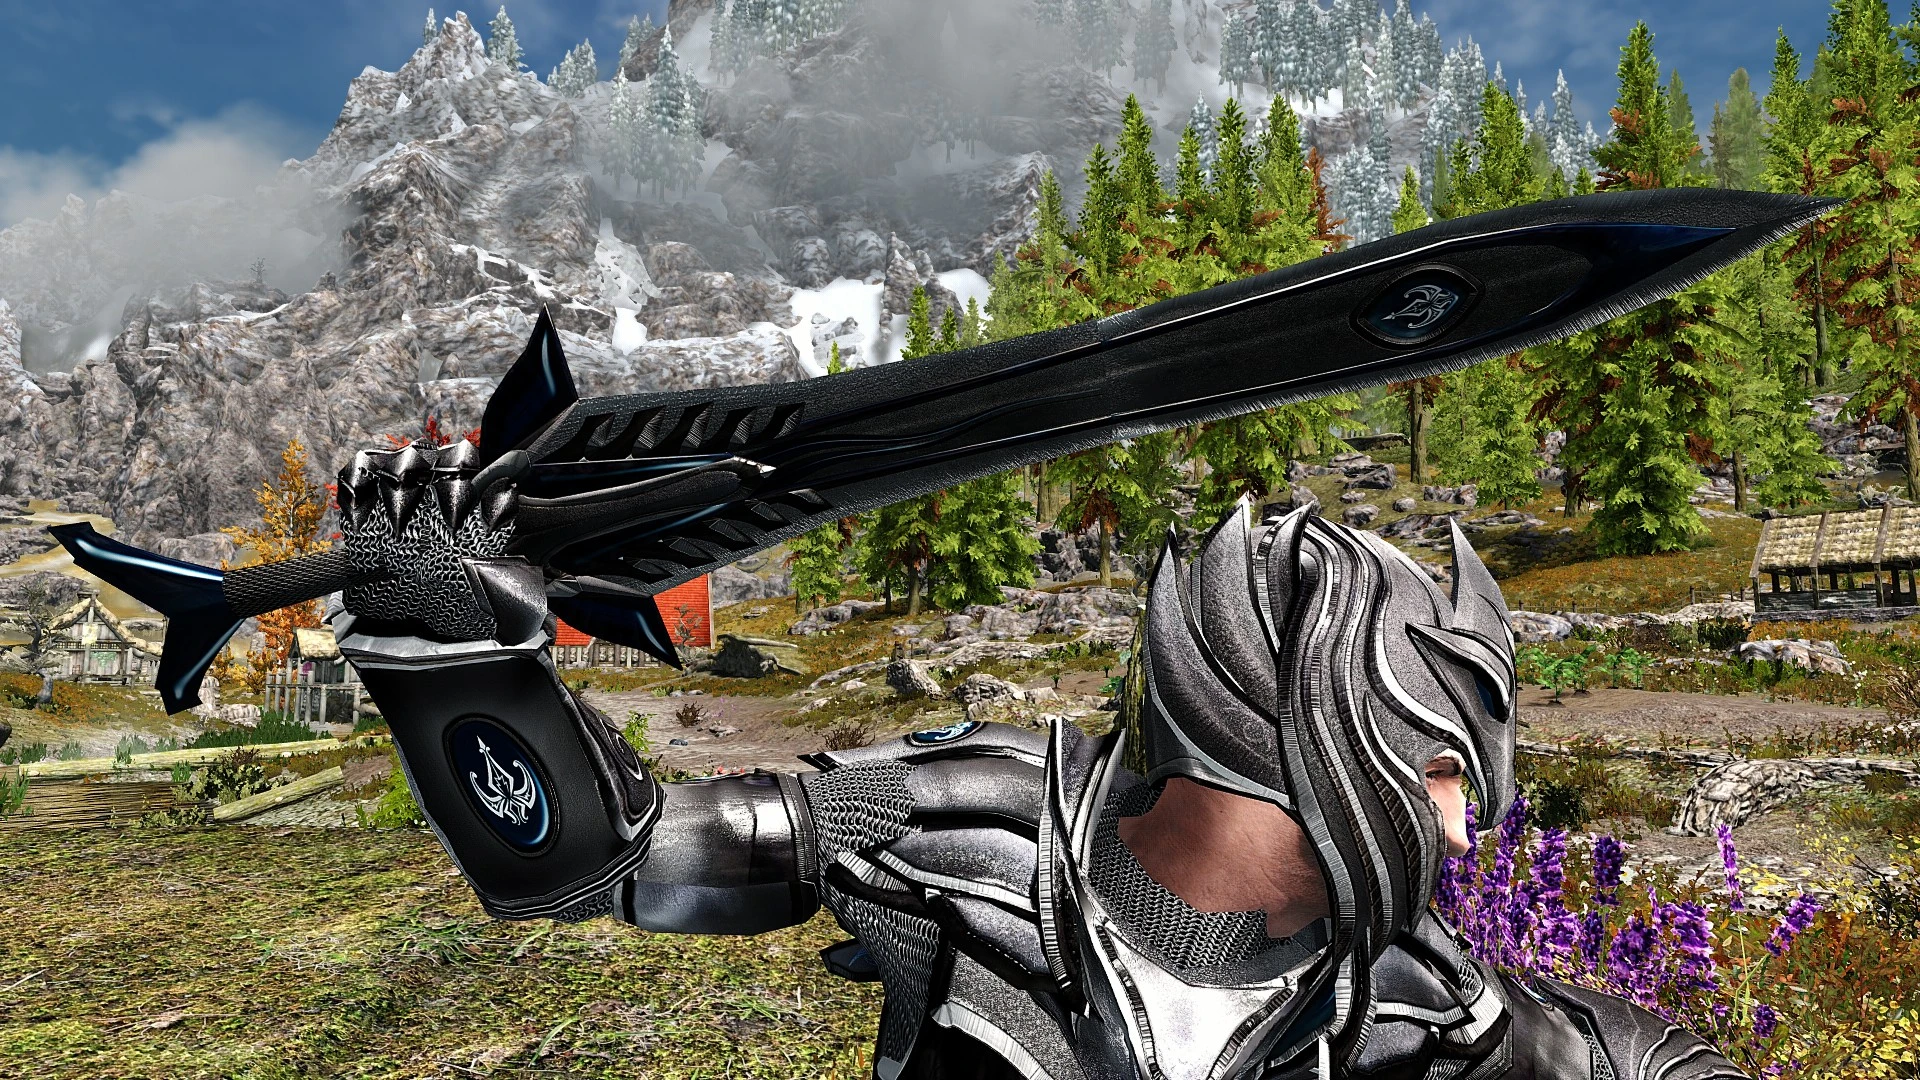 Colorful magic skyrim. Skyrim Special Edition Elven Armor. Skyrim colorful Magic мод. Мод на скайрим спешл эдишн на ИМБОВЫЙ лук. Skyrim colorful Magic Weapons.